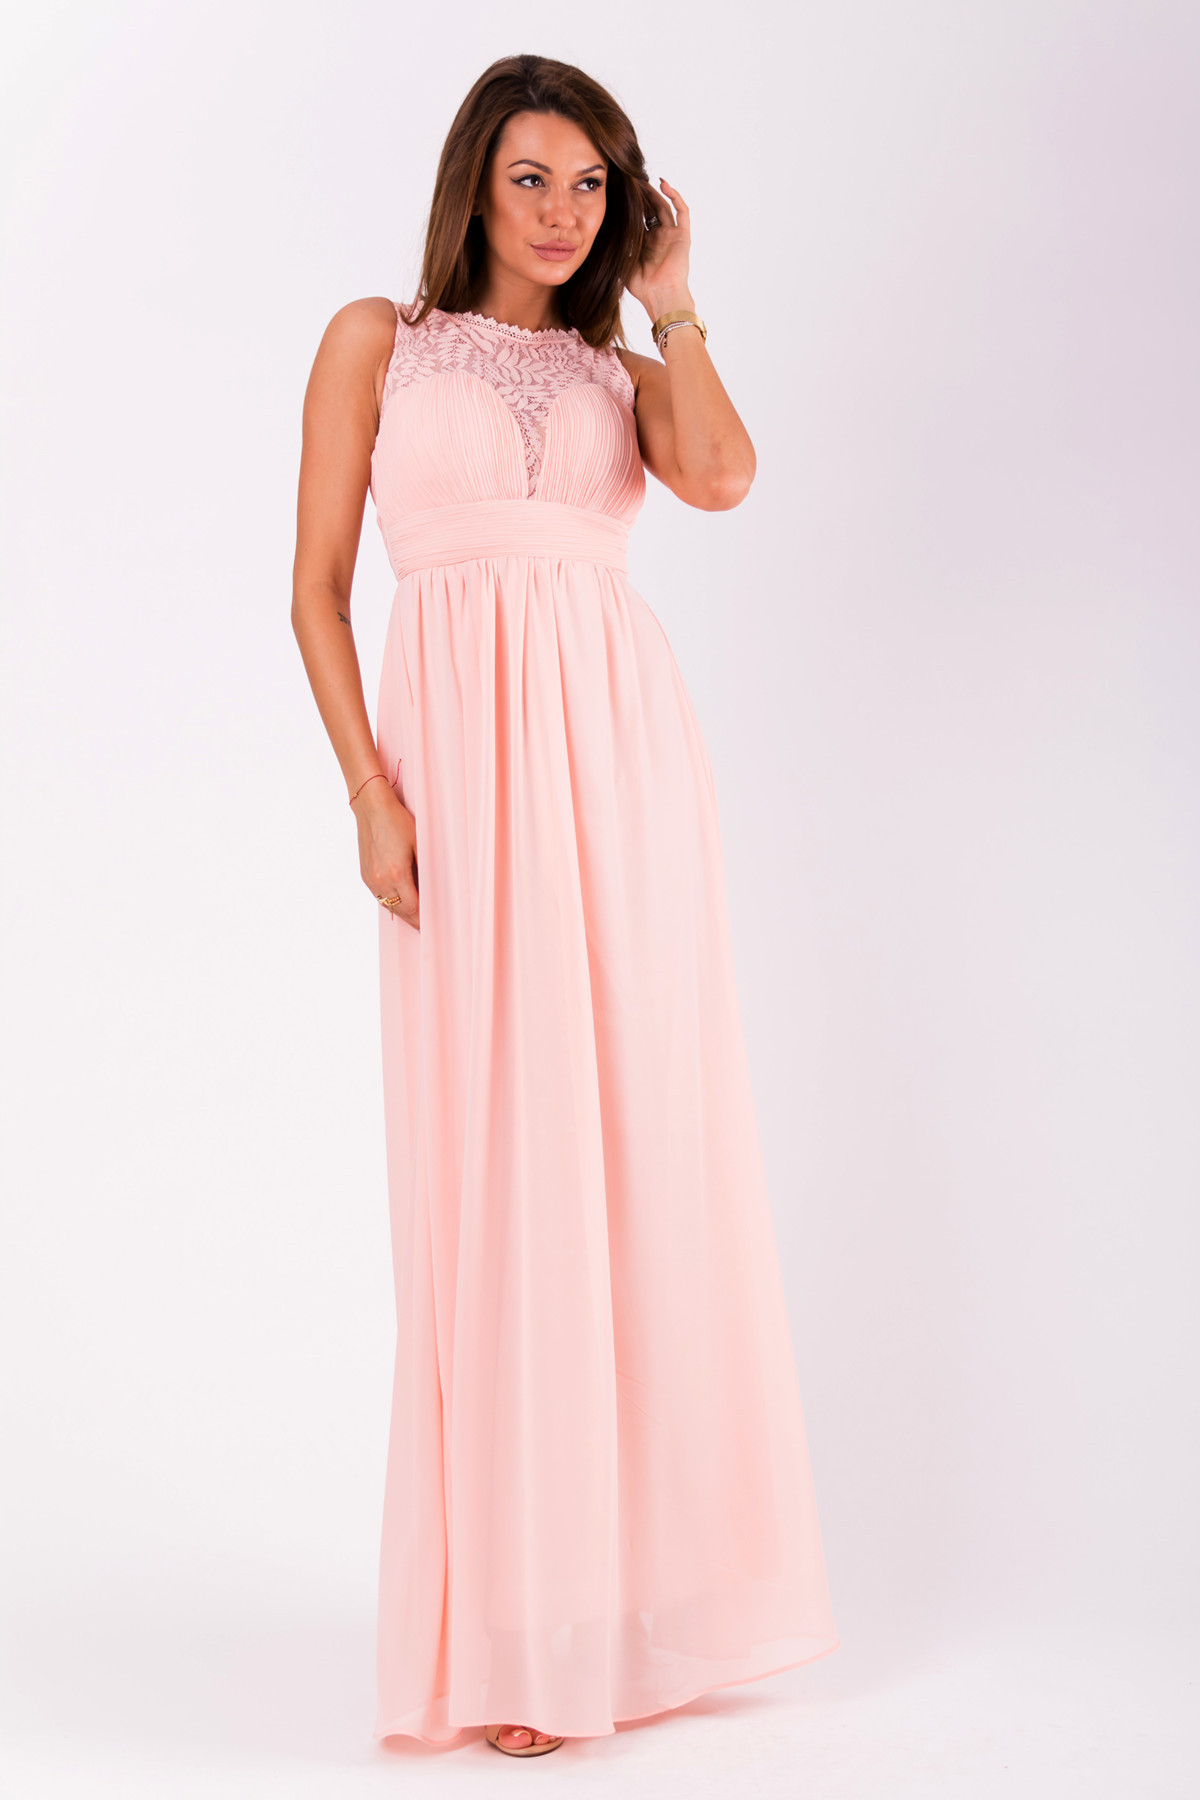 Společenské dámské šaty bez rukávů dlouhé růžové - EVA&LOLA S